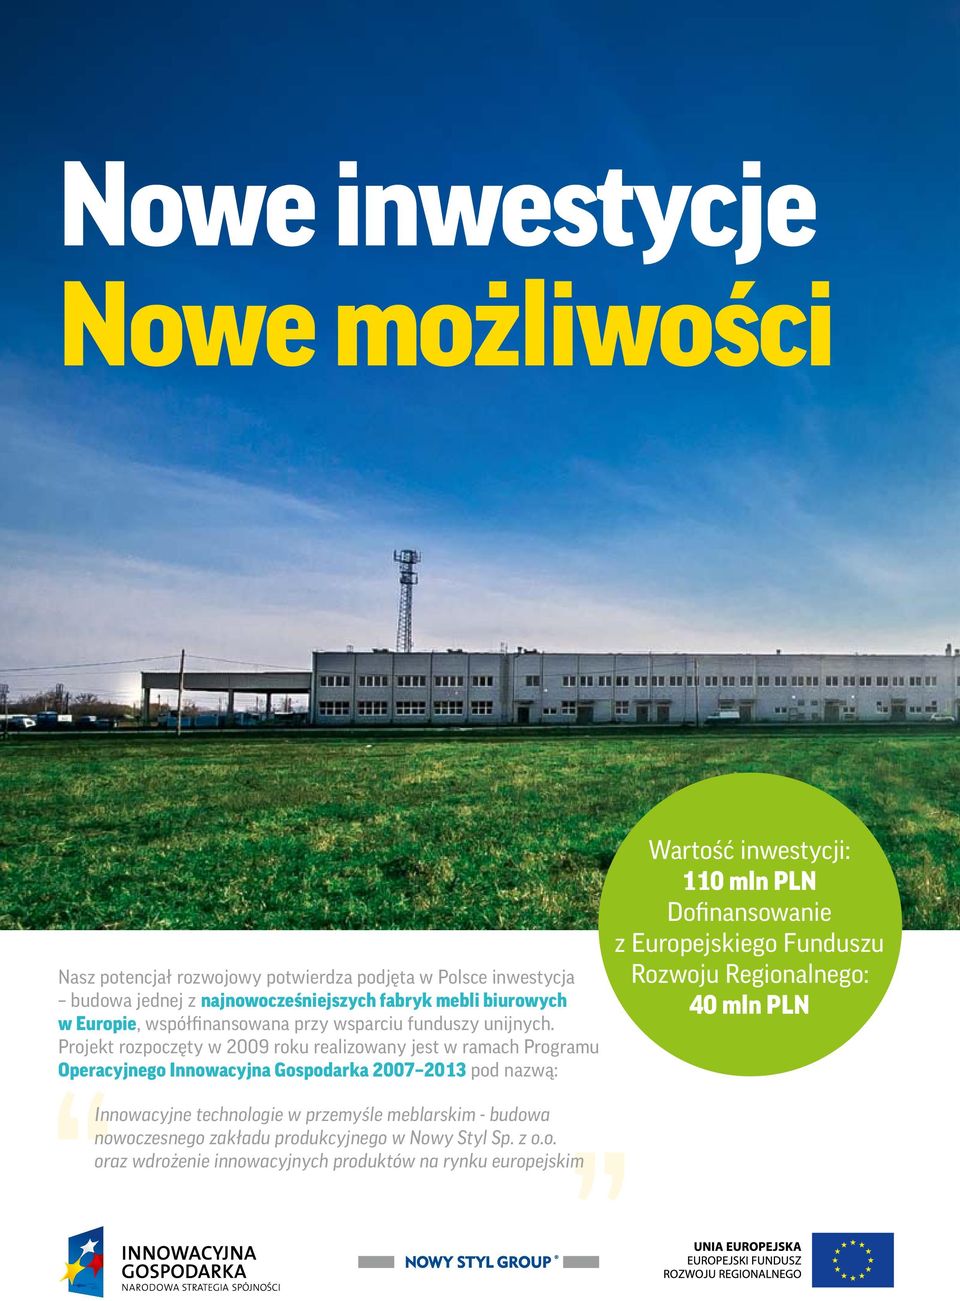 Projekt rozpoczęty w 2009 roku realizowany jest w ramach Programu Operacyjnego Innowacyjna Gospodarka 2007 2013 pod nazwą: Wartość inwestycji: 110 mln PLN